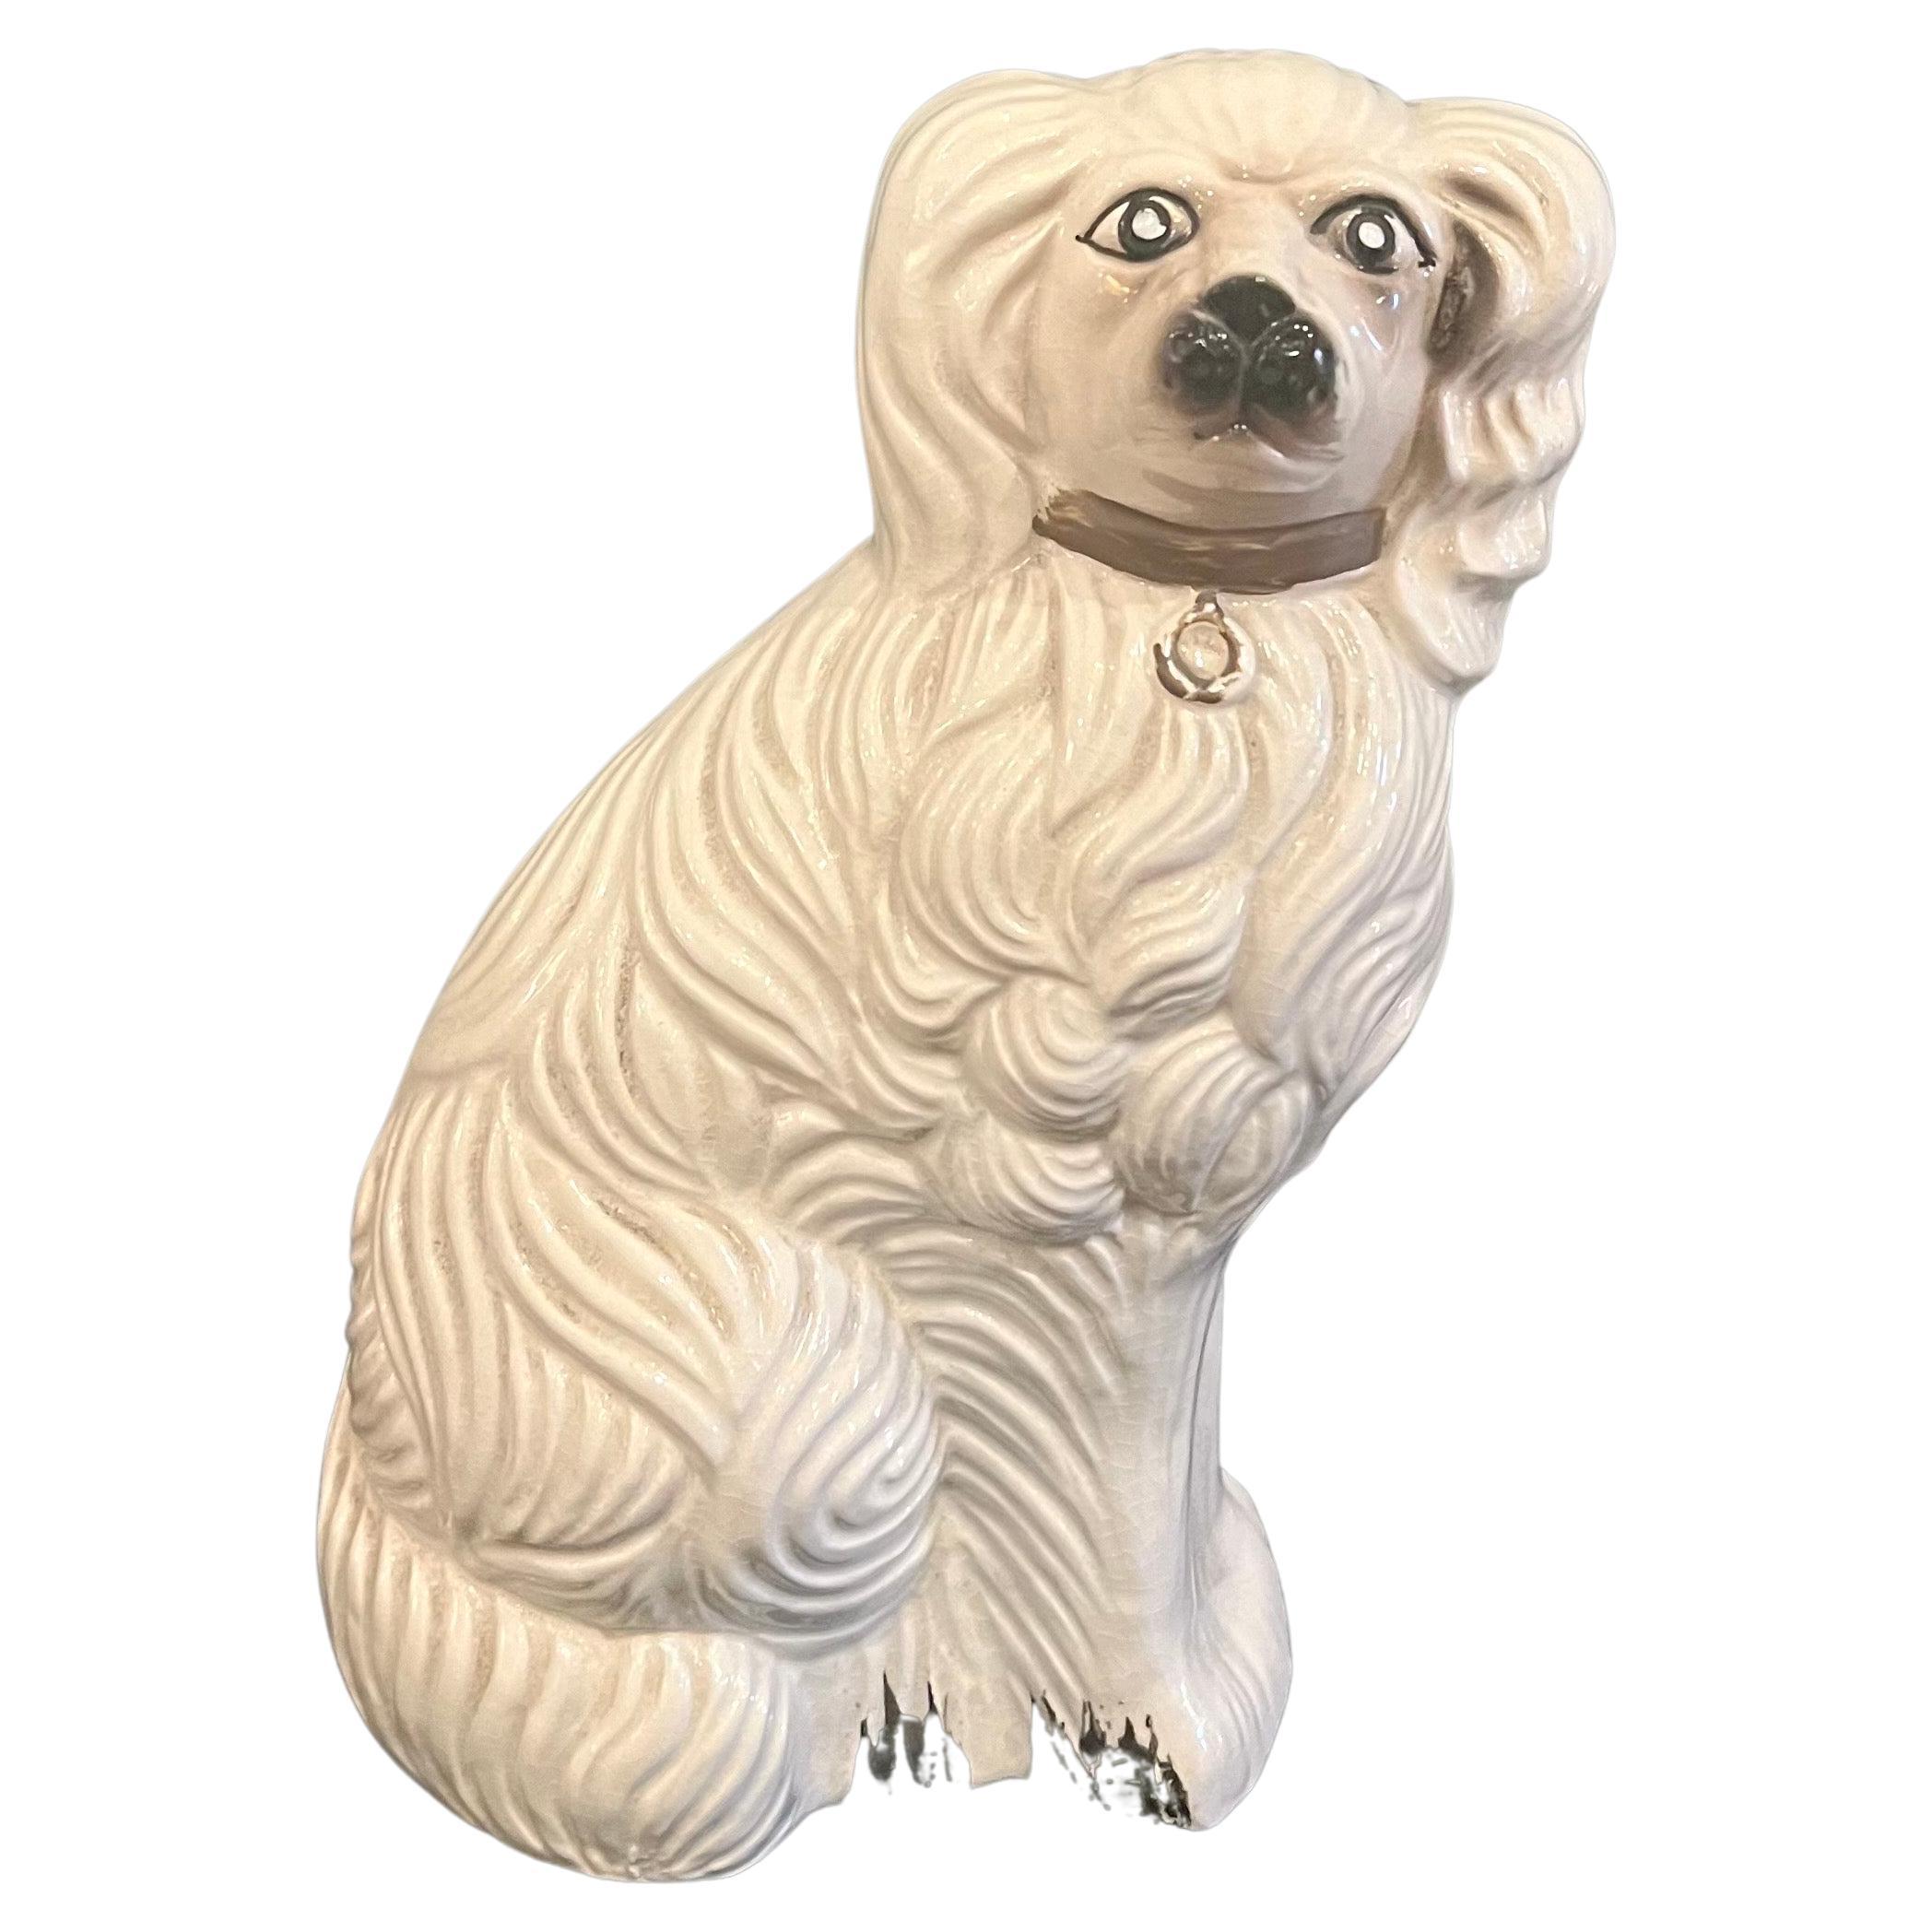 Magnifique figurine en céramique de chien épagneul, circa 1950, fabriquée au Japon, en très bon état, sans ébréchures ni fissures.